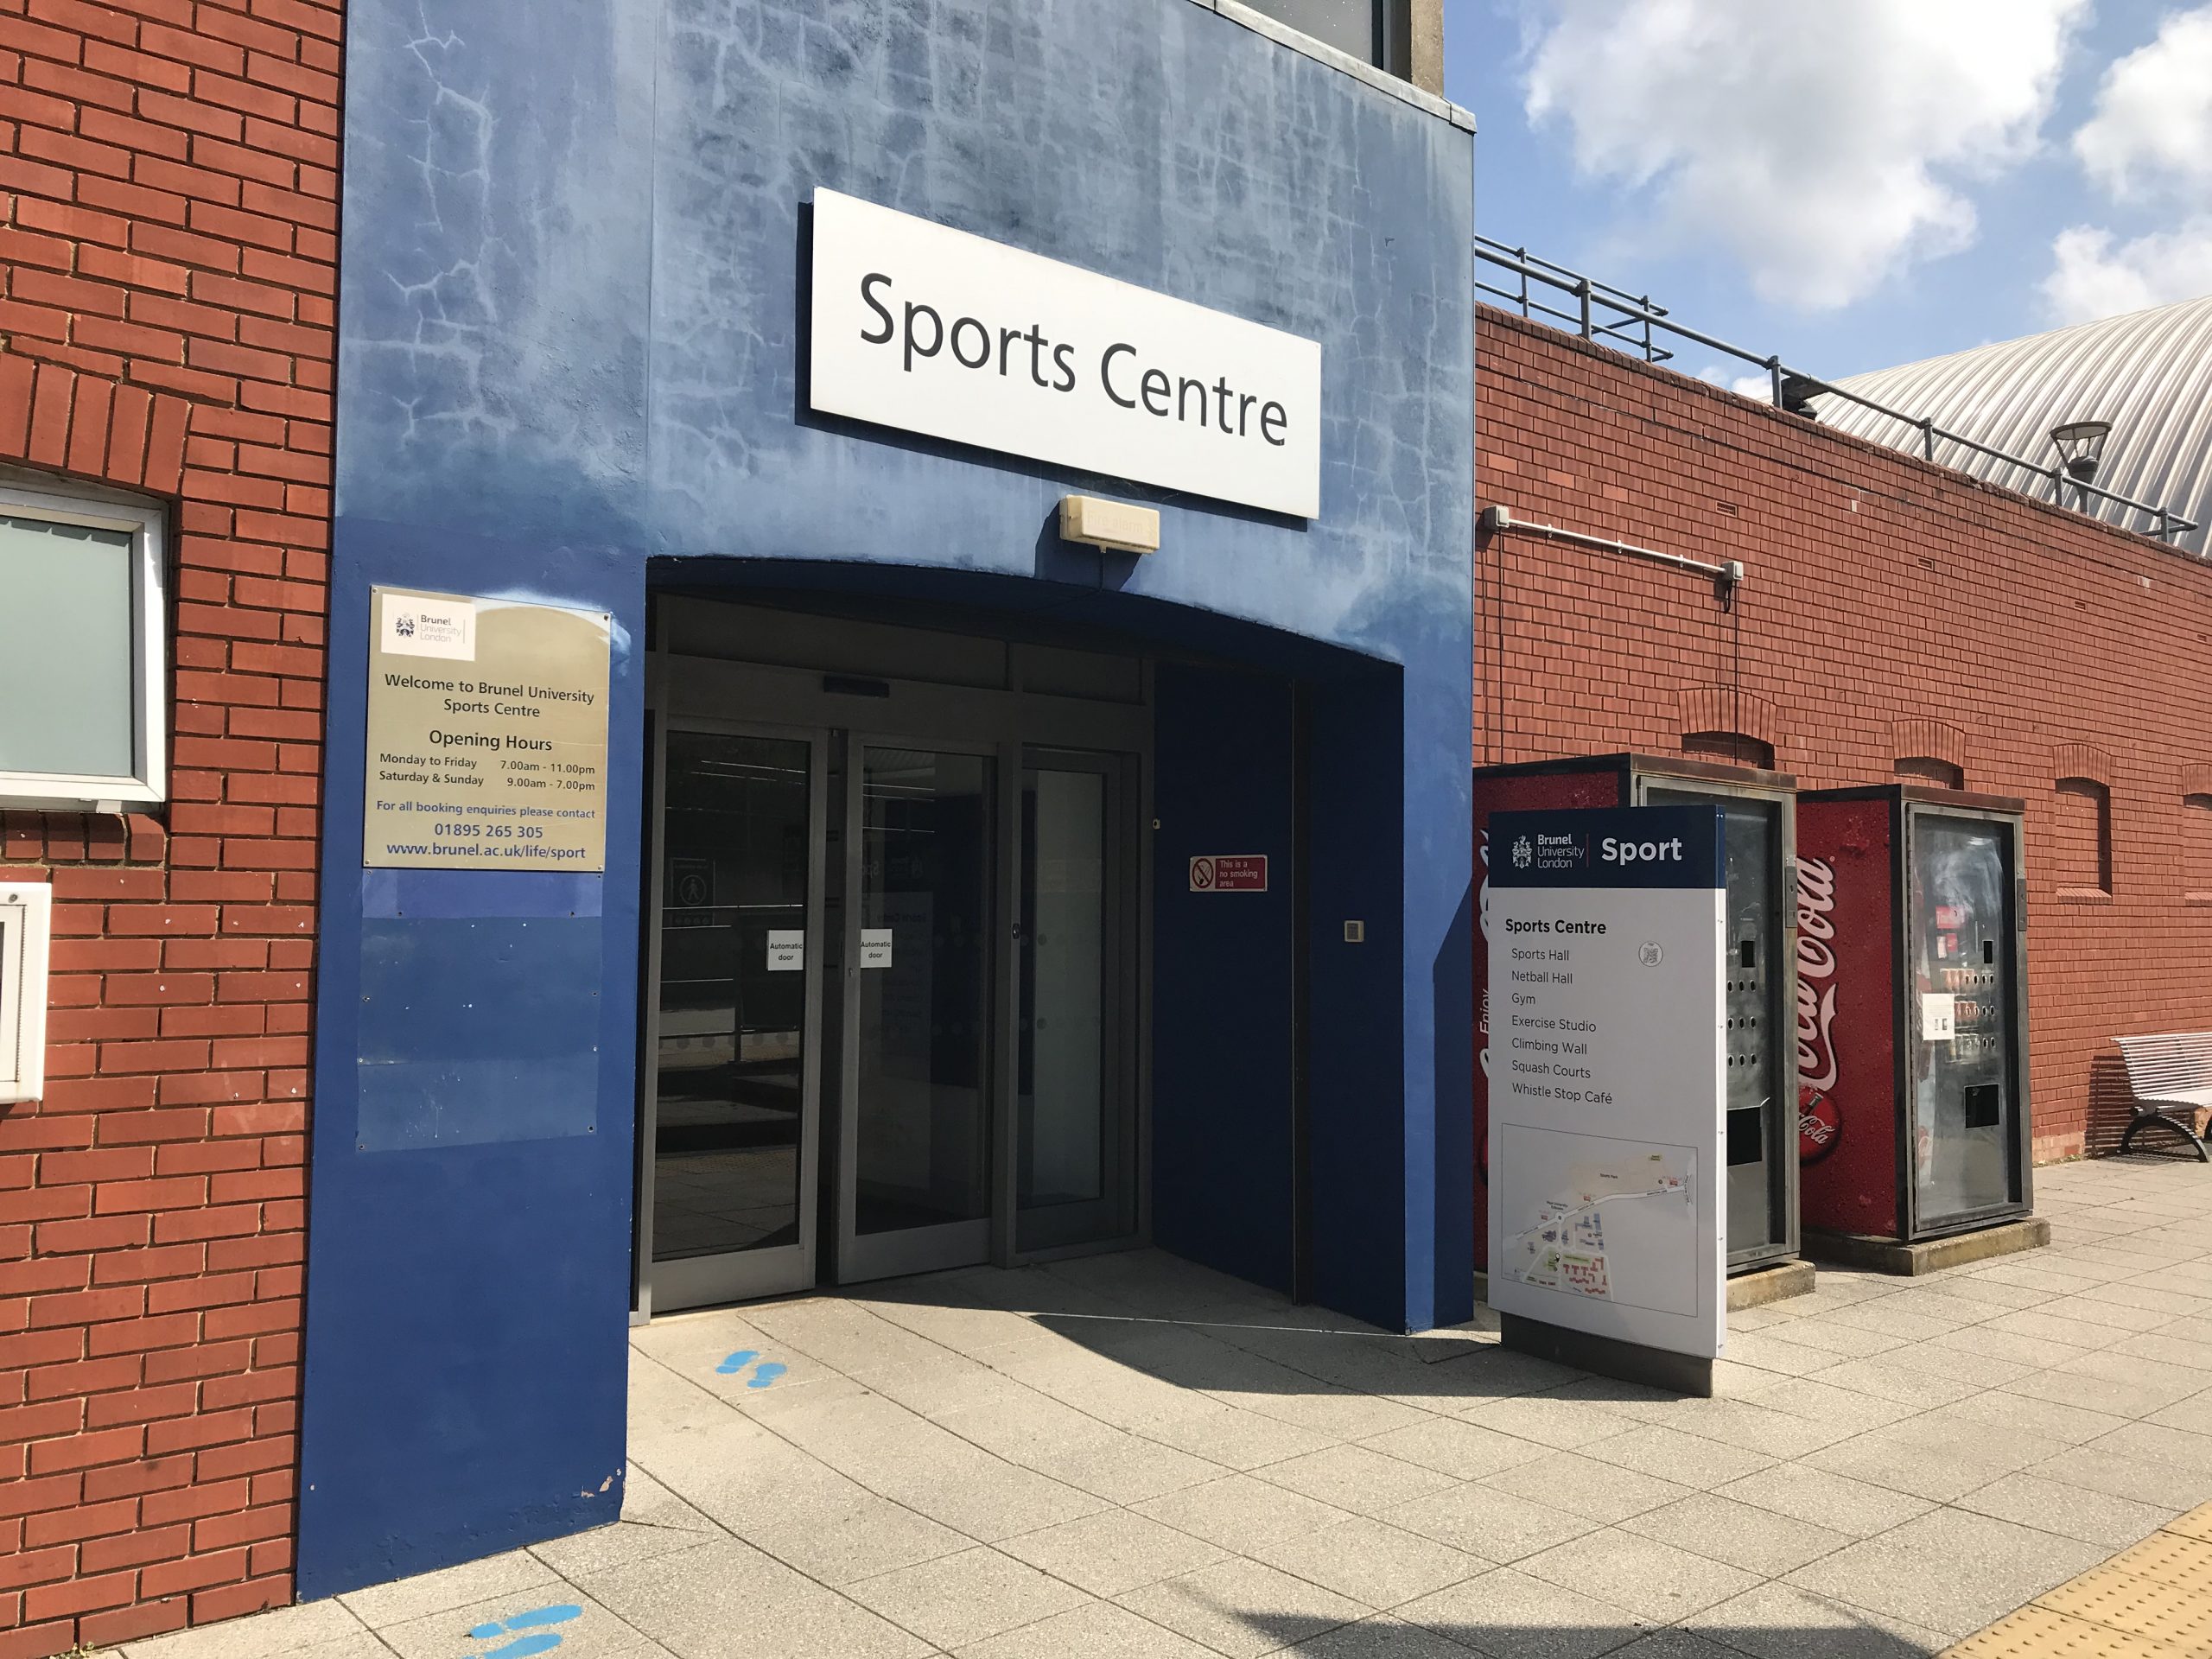 Sports Centre entrance